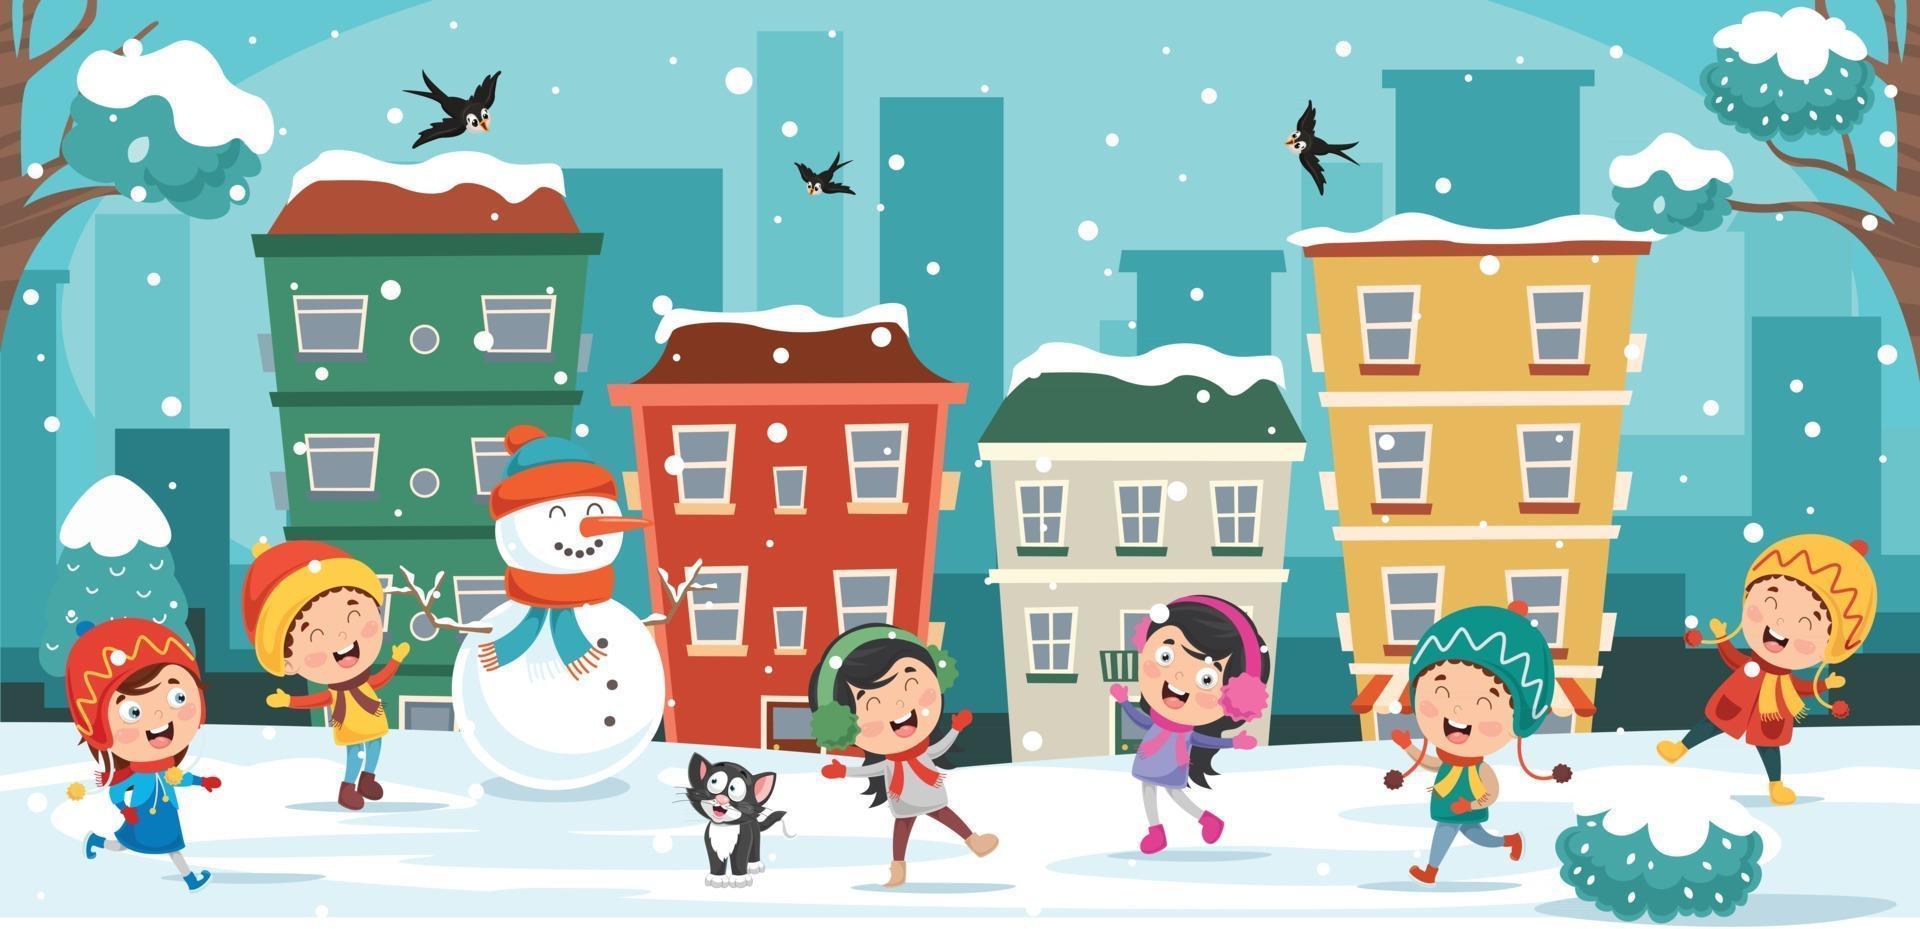 dibujo de invierno con personaje de dibujos animados vector